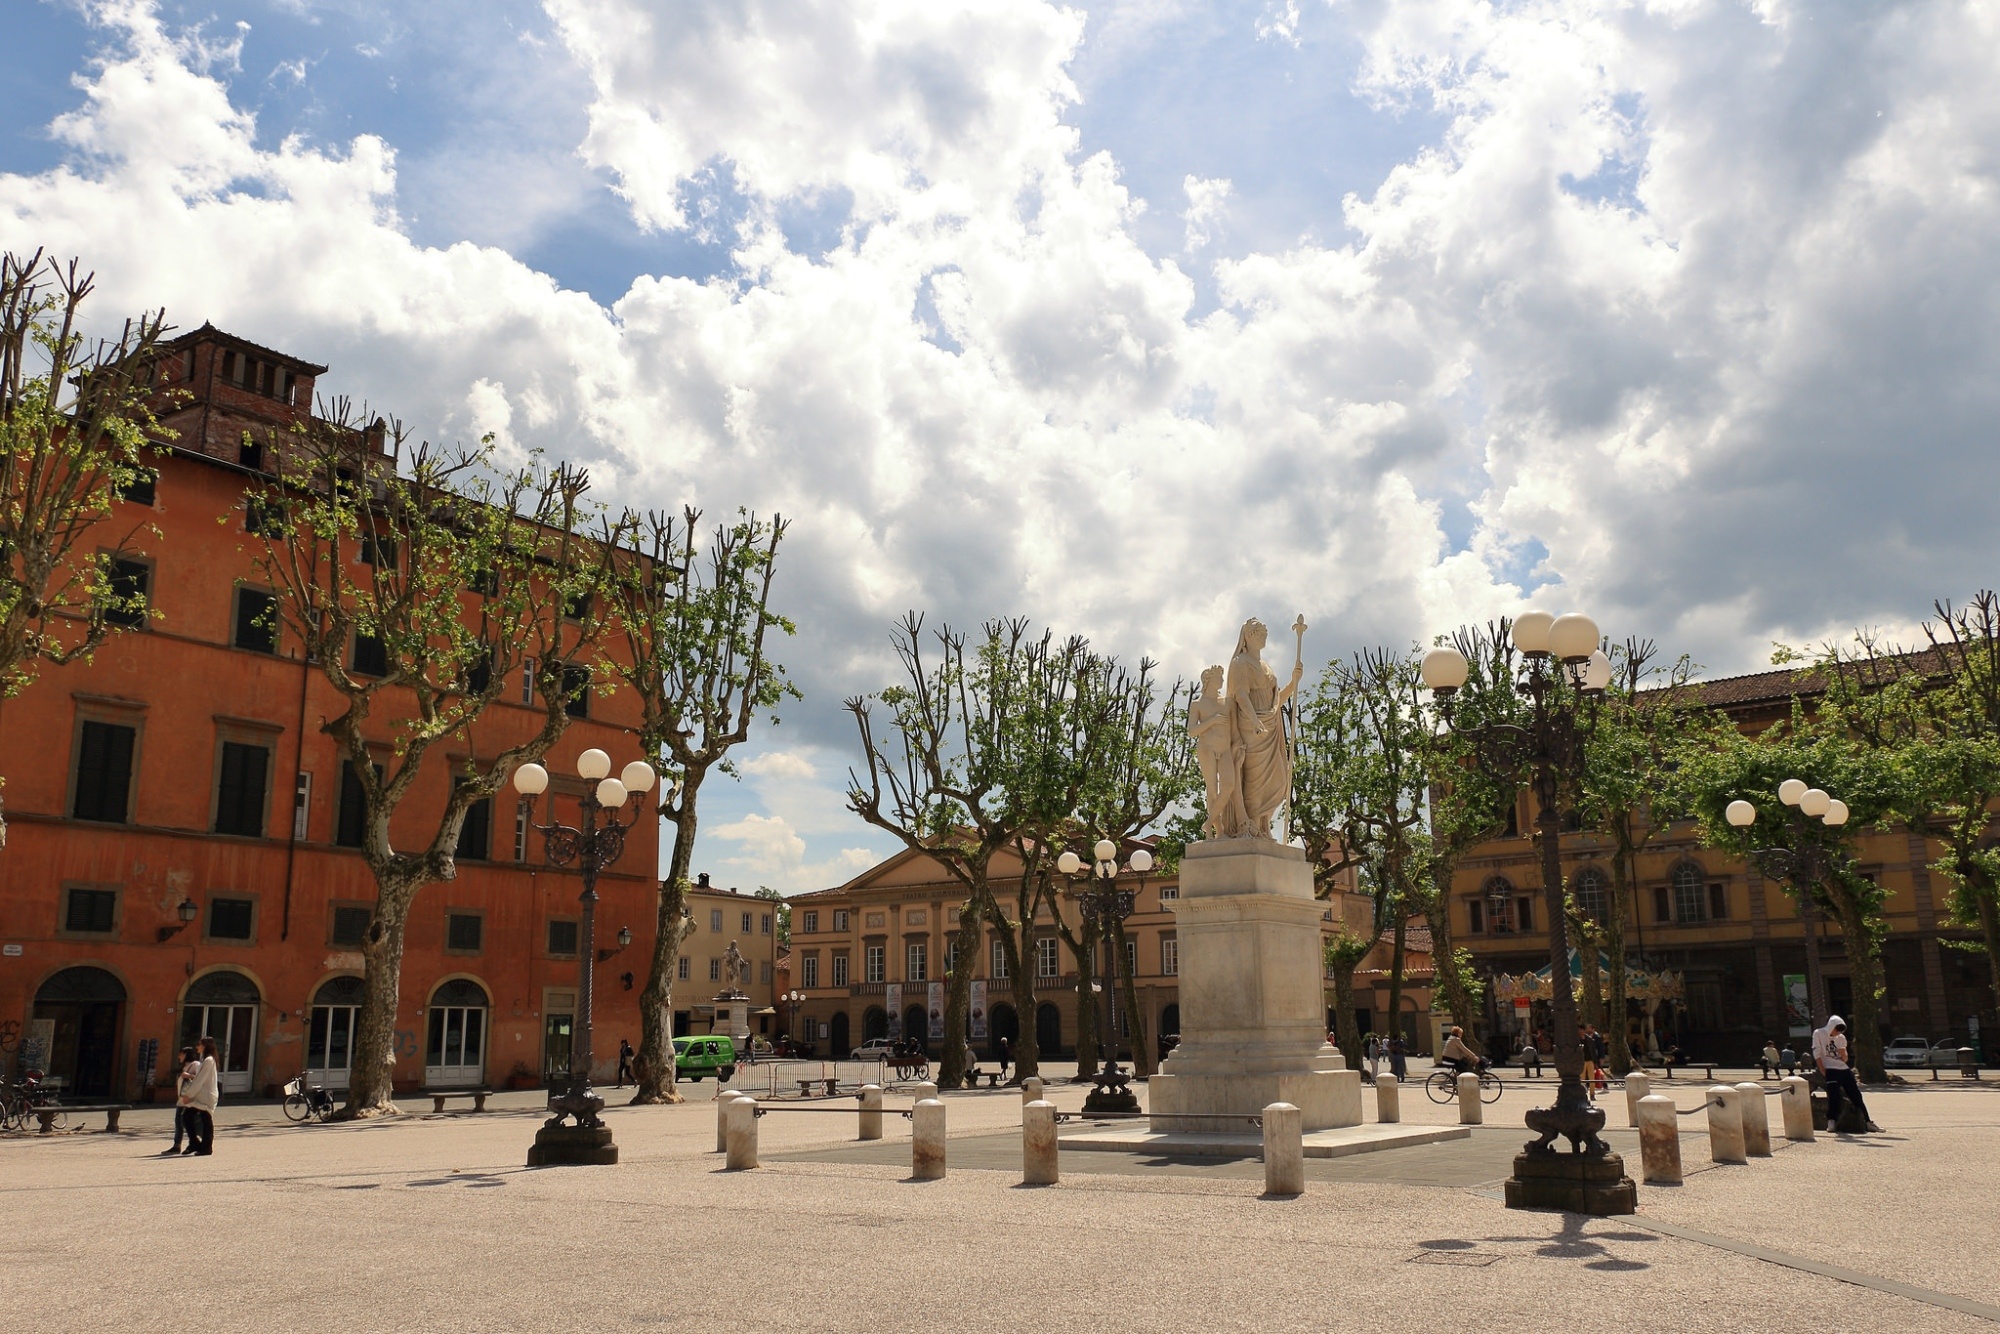 Piazza Napoleone, Lucca attractions, Iconic square, Historic landmark, 2000x1340 HD Desktop